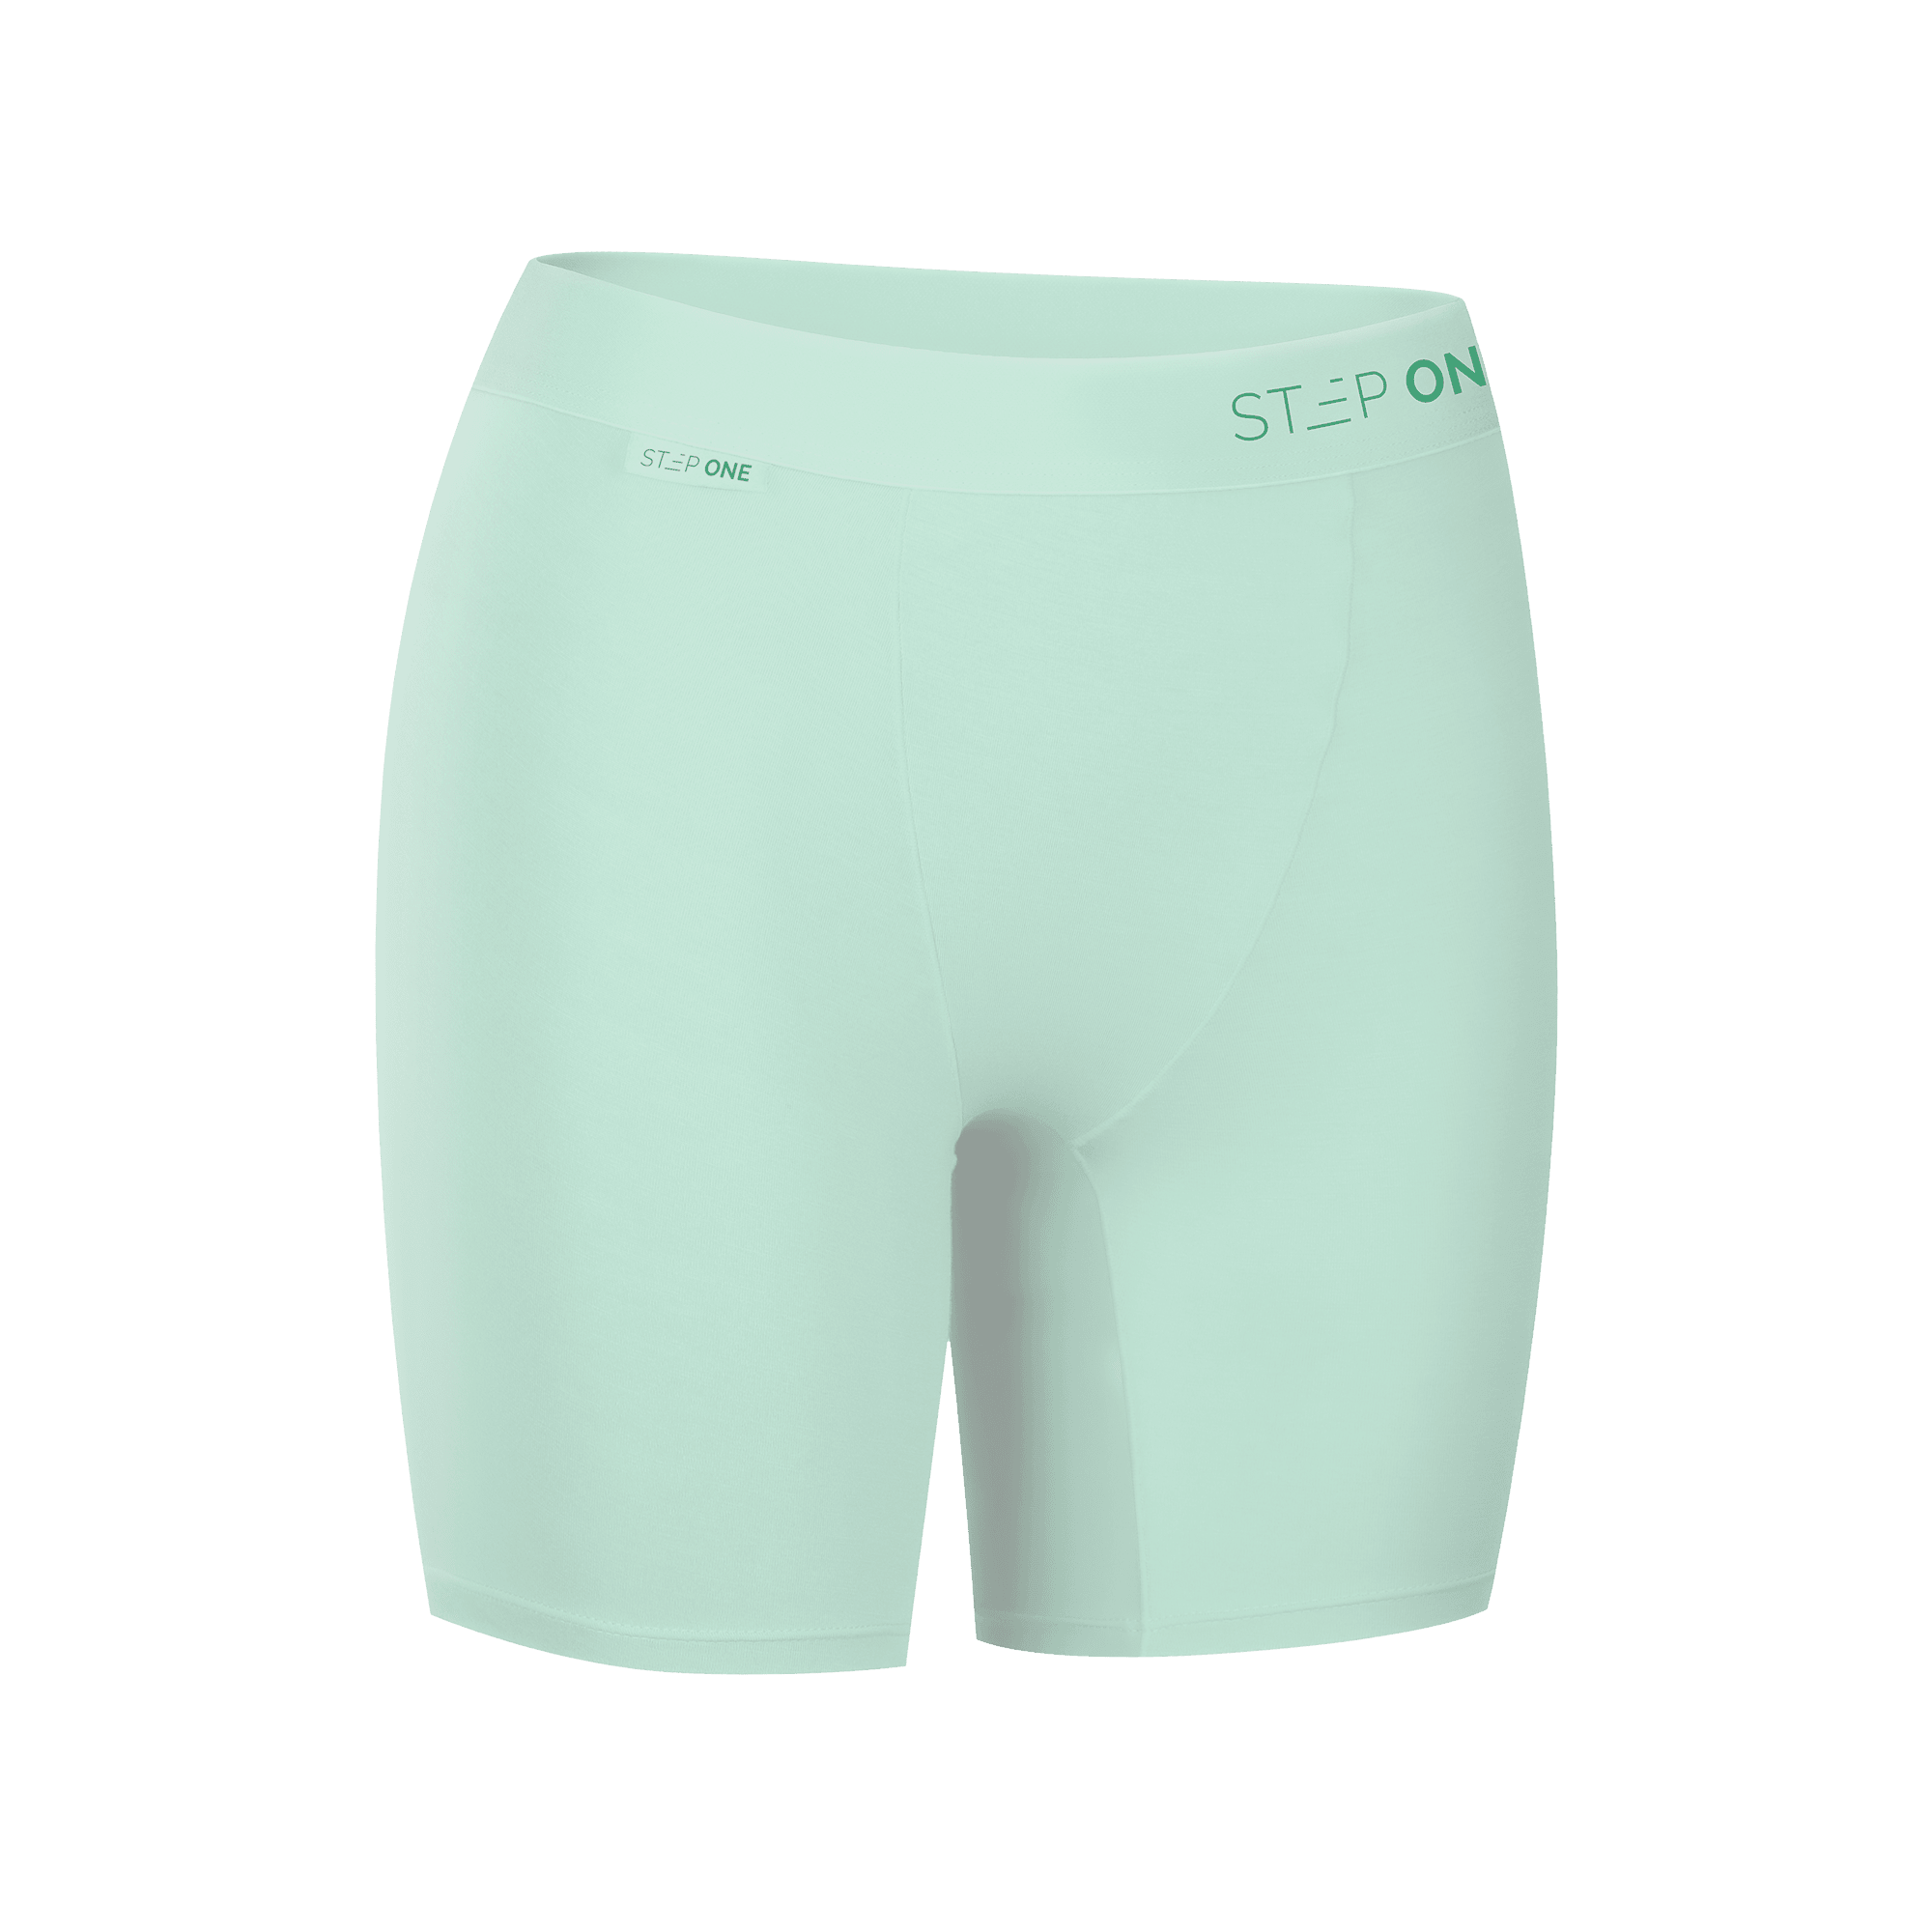 Women's Body Shorts - Mint